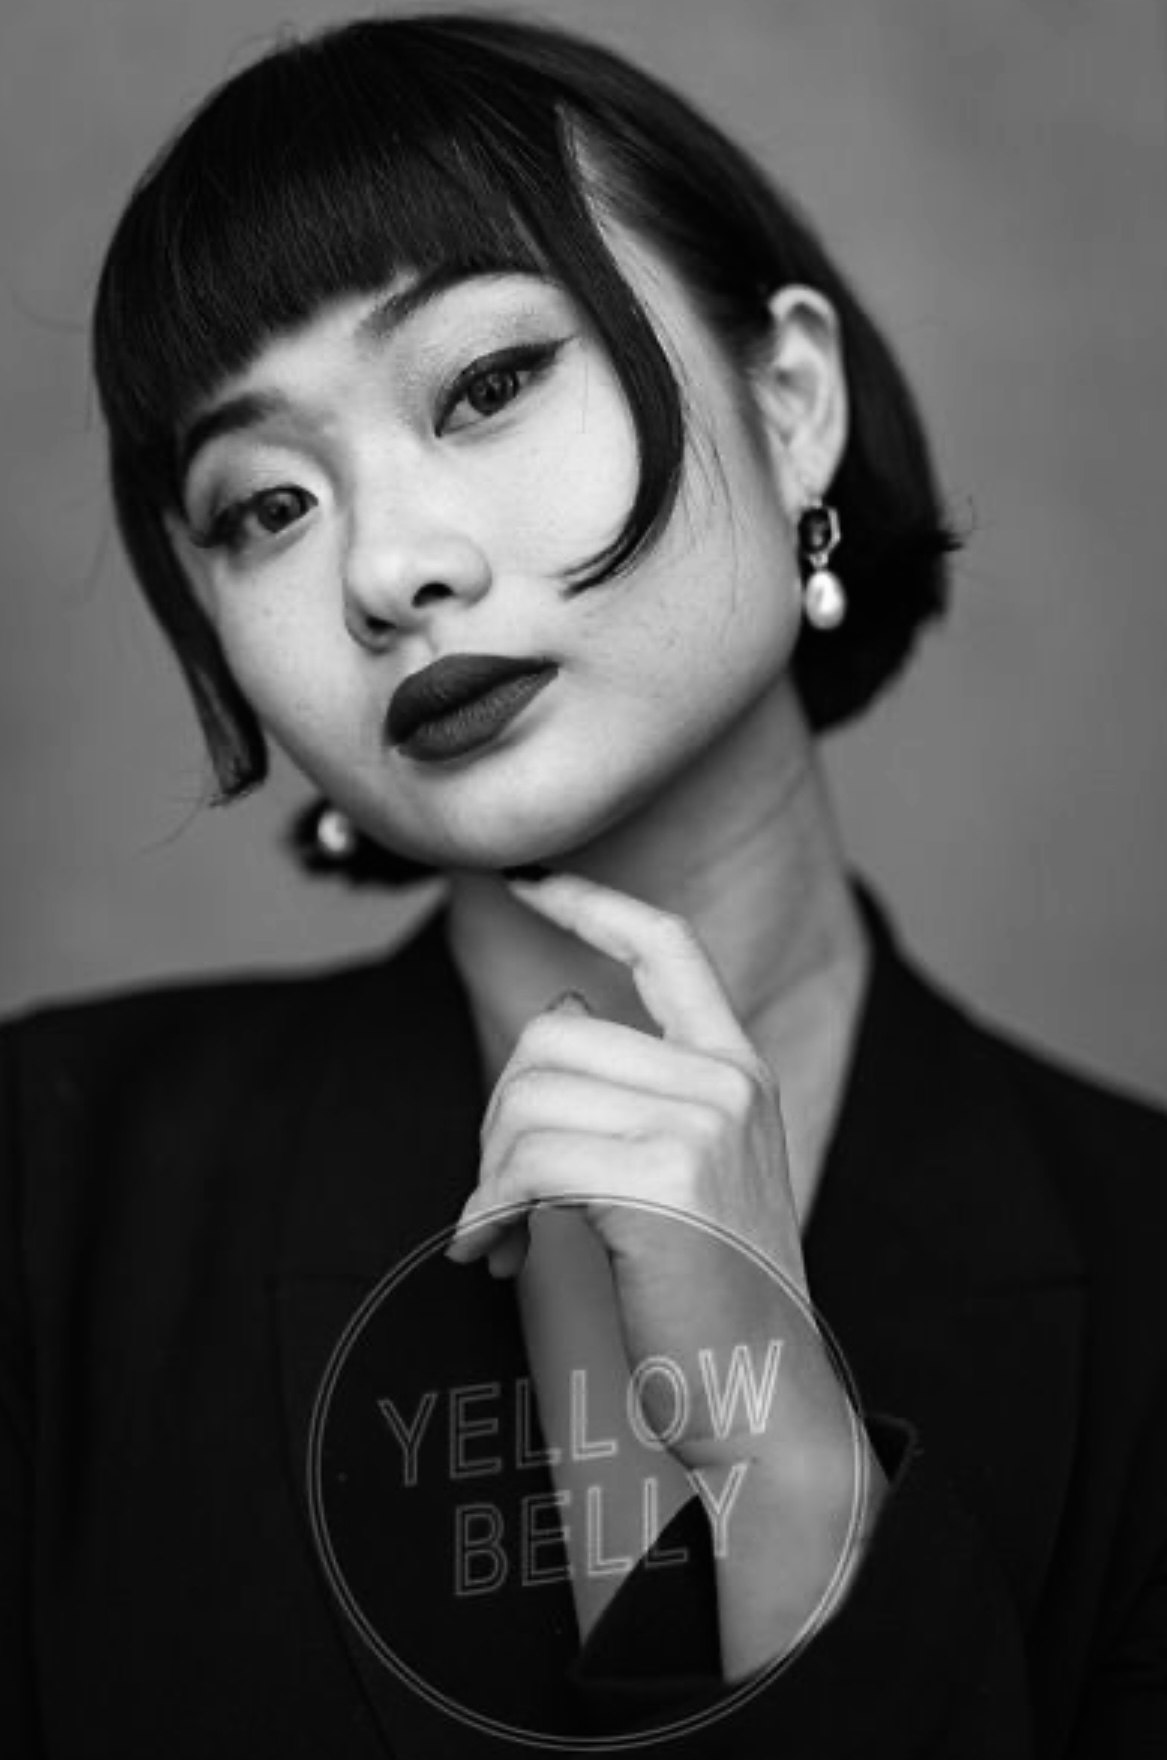 An image of Shannon (Sun Yee) Yuen